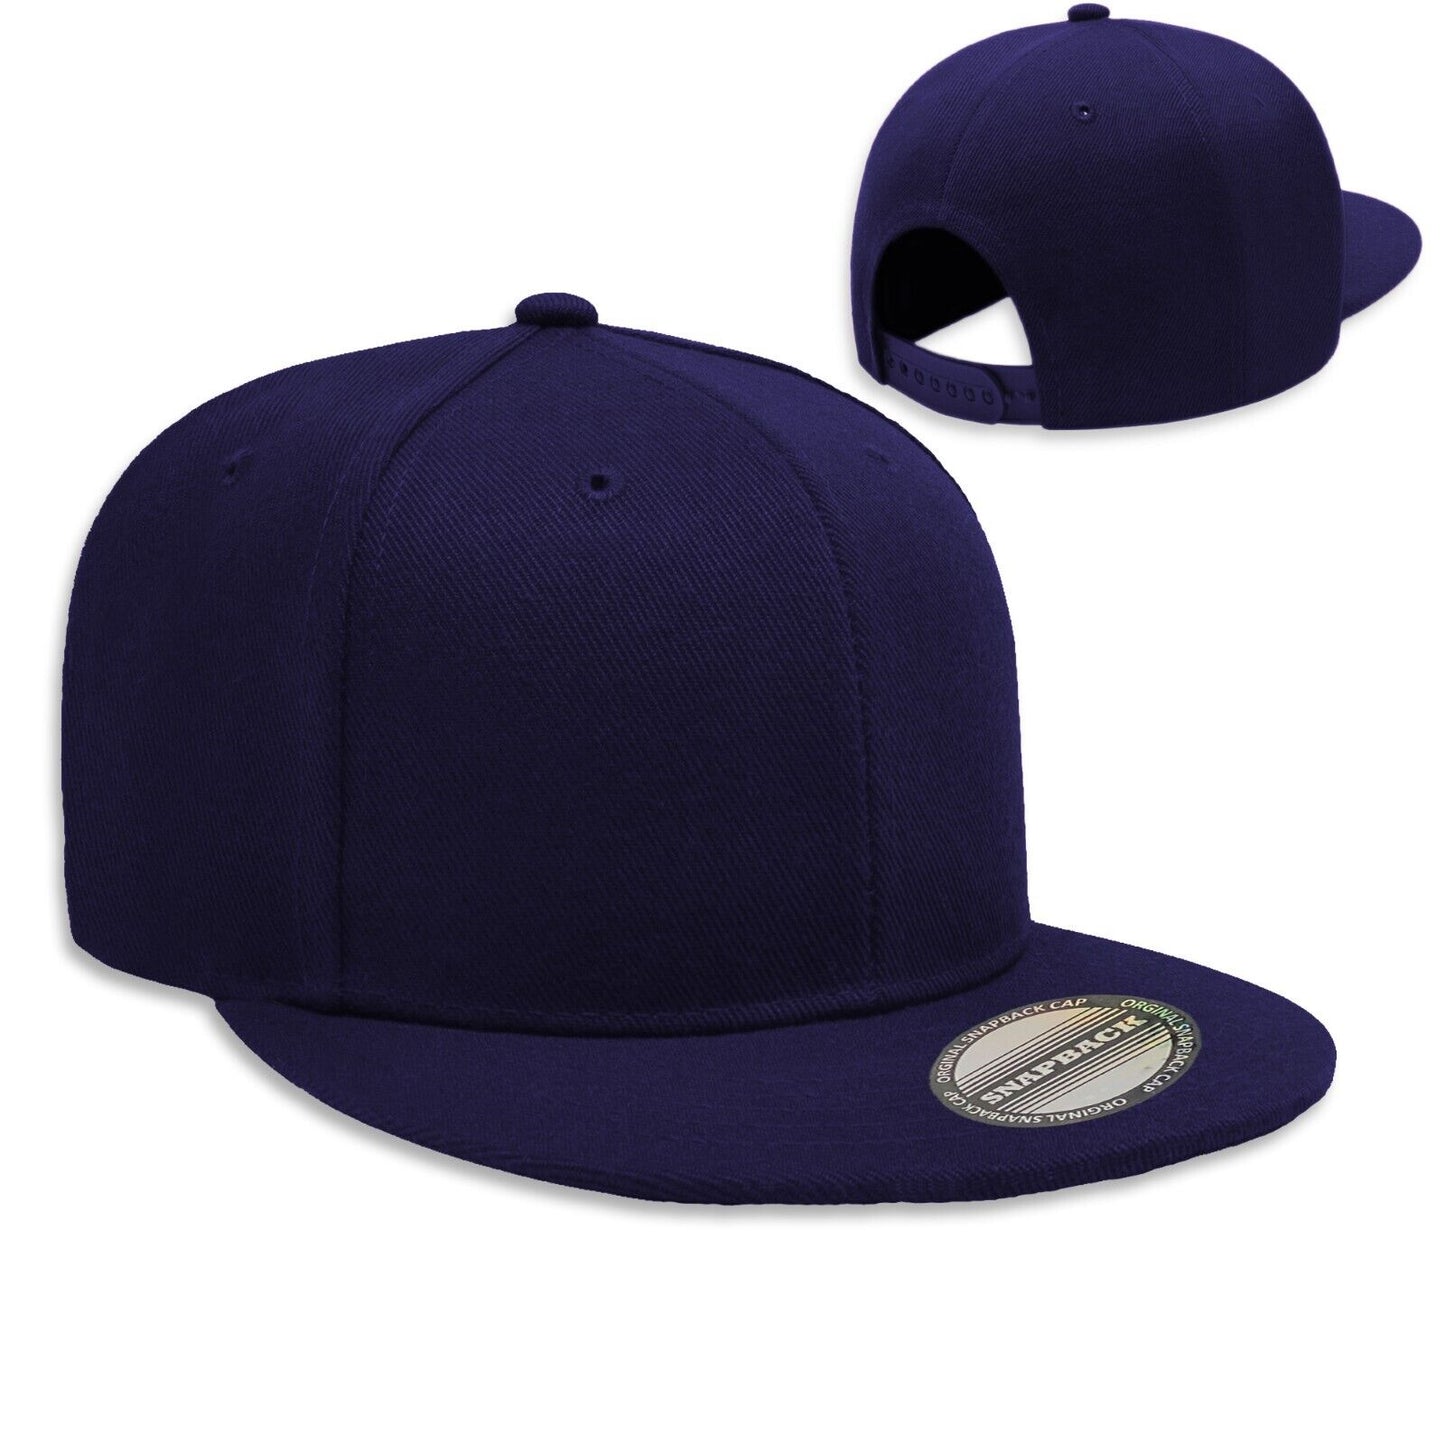 Black Adult Unisex Casual Solid Adjustable Baseball Caps Snapback